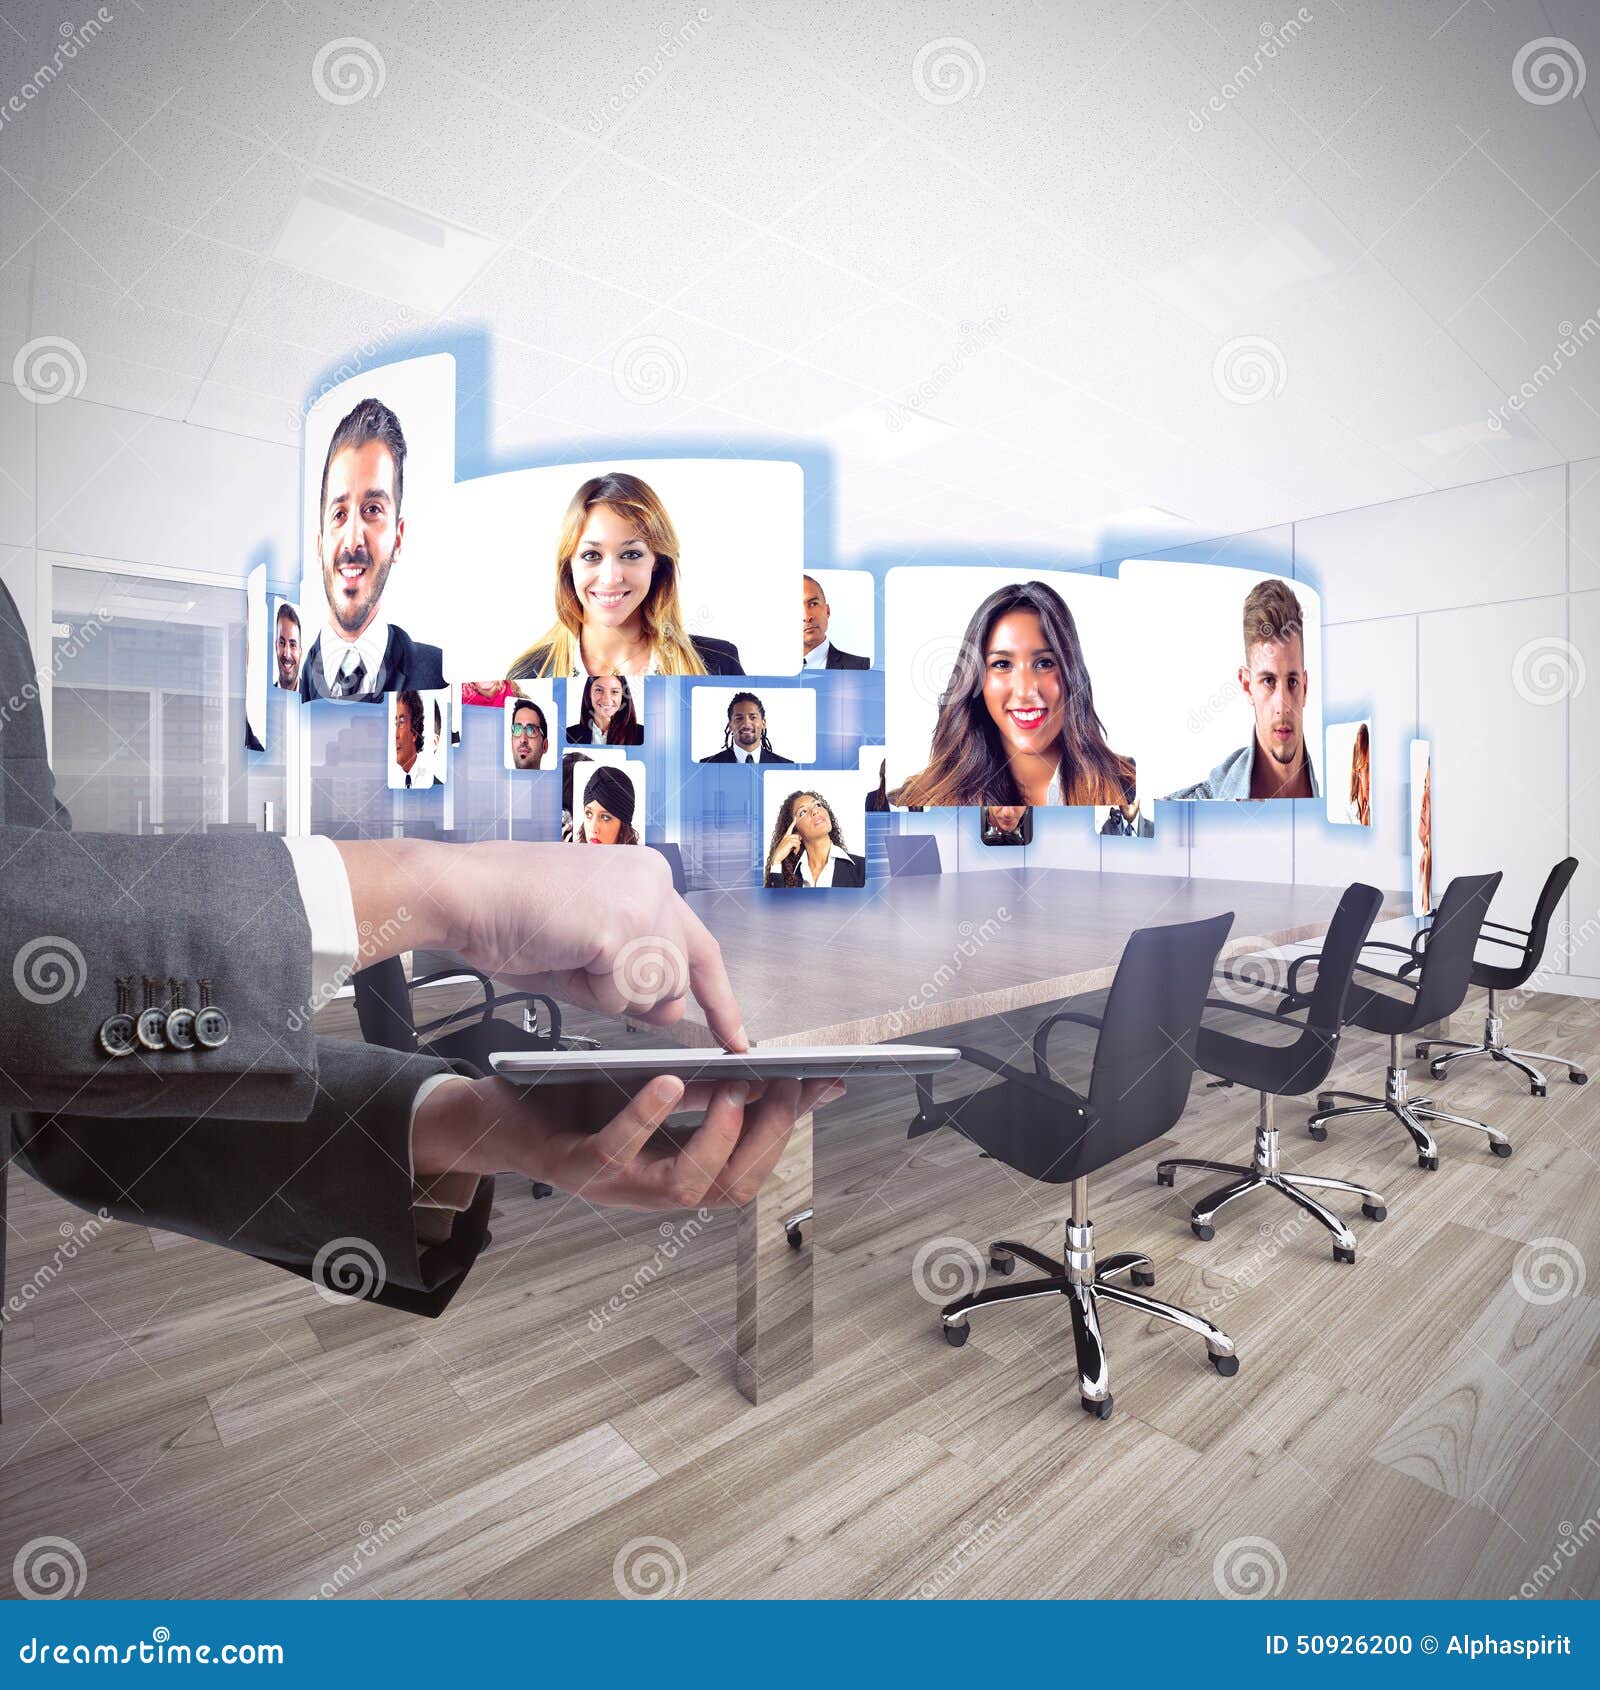 videoconference business team